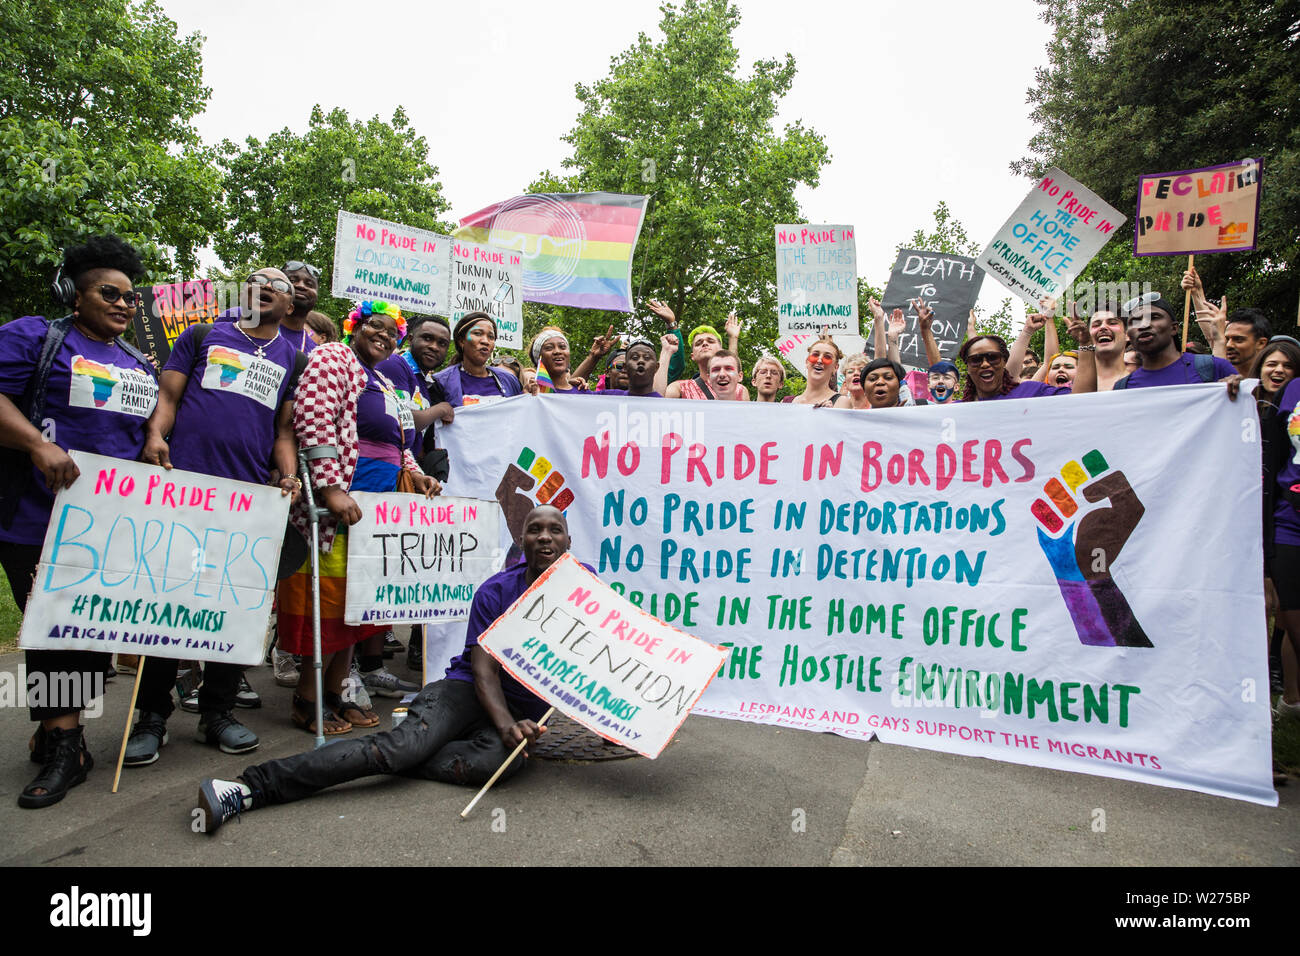 Londres, Royaume-Uni. 6 juillet, 2019. Des militants de Gays et Lesbiennes, soutenir les migrants, arc-en-ciel d'Afrique, l'extérieur de la famille, Projet Arc-en-ciel Micro et beaucoup d'autres groupes LGBT se préparent à prendre part à une marche de solidarité Fierté de Londres à l'arrière de la fierté de Londres - stewards a essayé de les empêcher de se joindre à - en solidarité avec ceux pour qui la fierté de Londres est inaccessible et pour protester contre la corporatisation de fierté à Londres. Credit : Mark Kerrison/Alamy Live News Banque D'Images